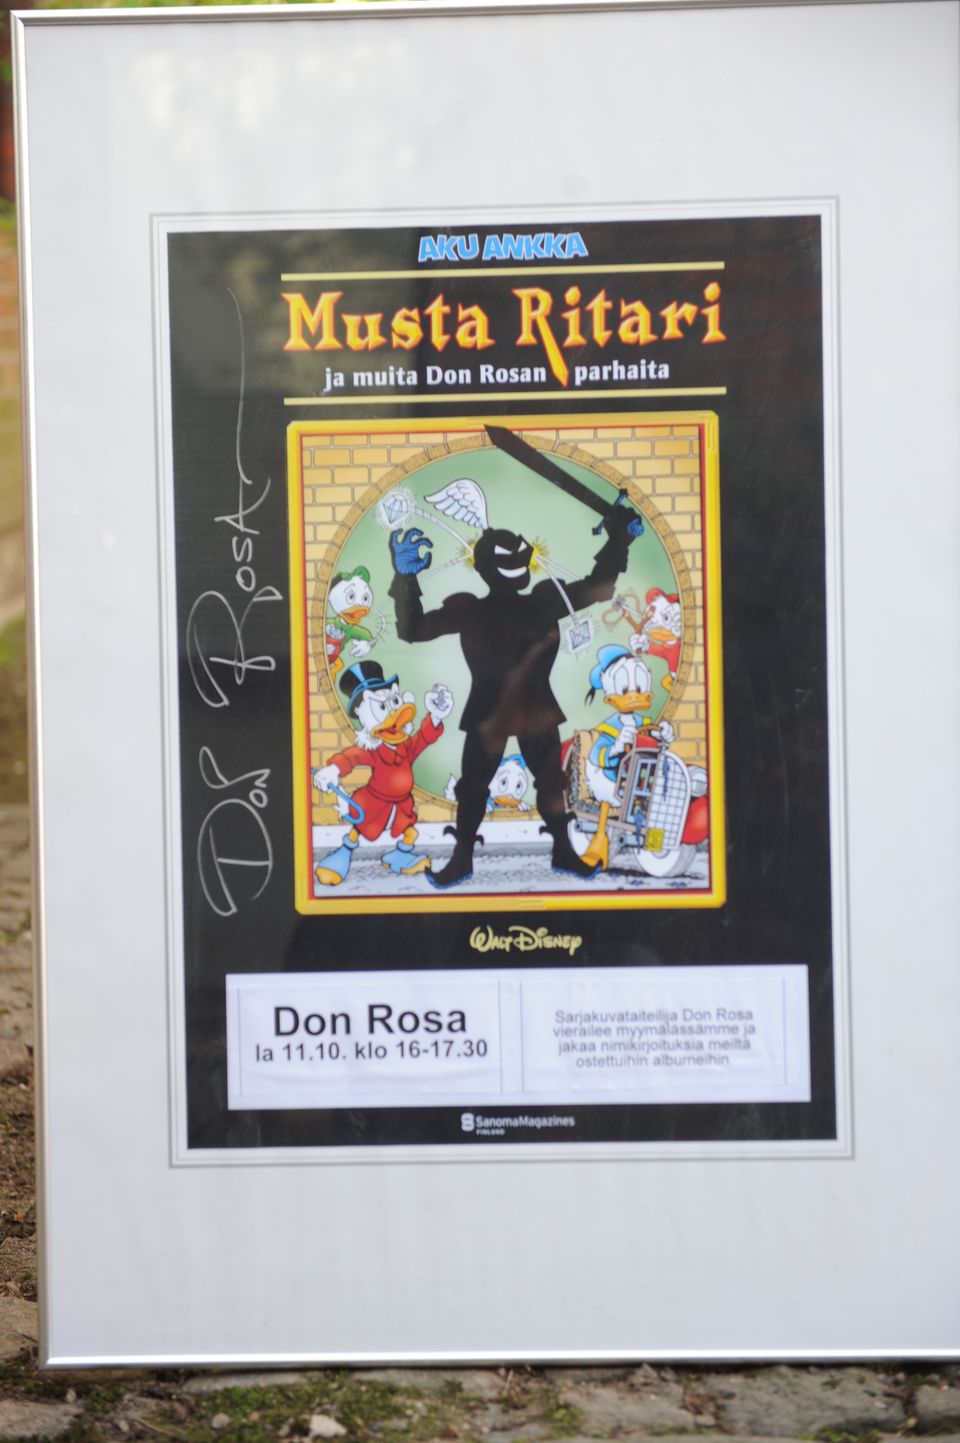 Musta Ritari ja muita Don Rosan parhaita juliste